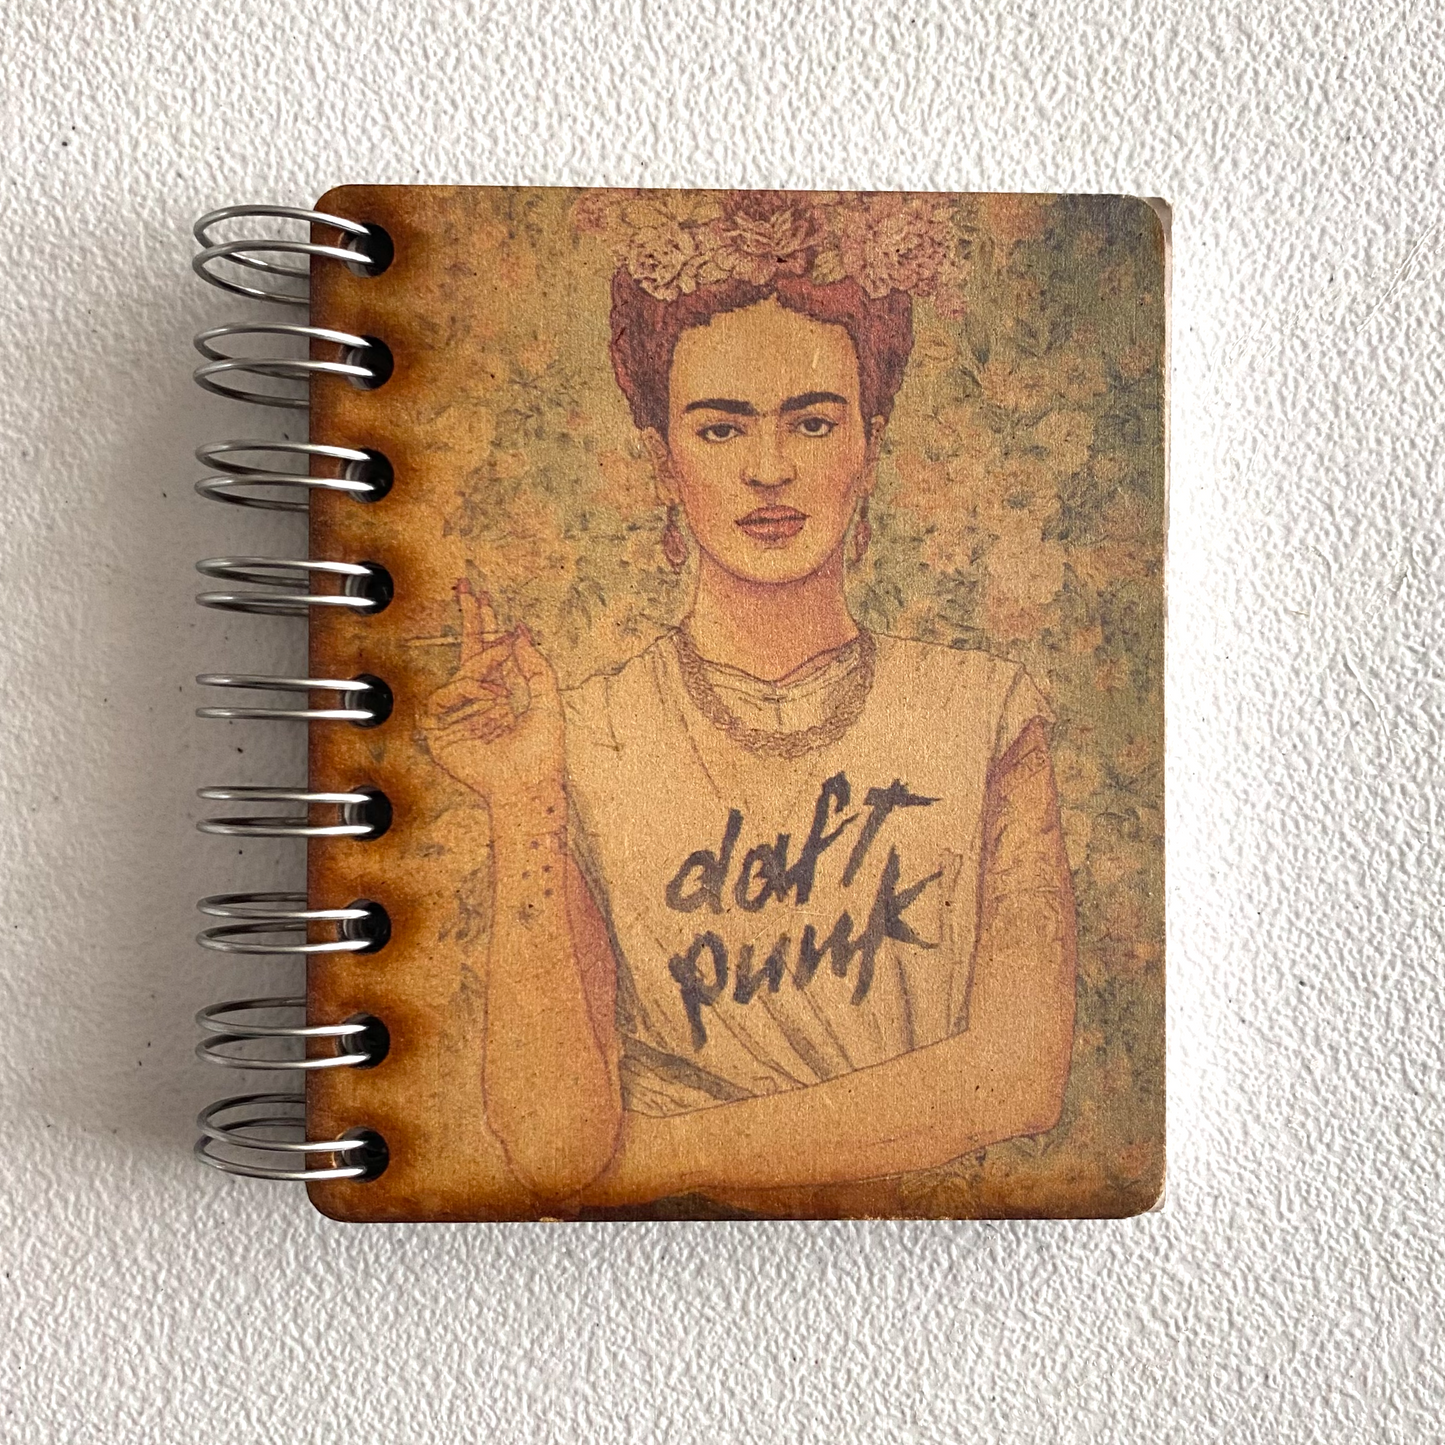 Mini Frida Kahlo Notebook